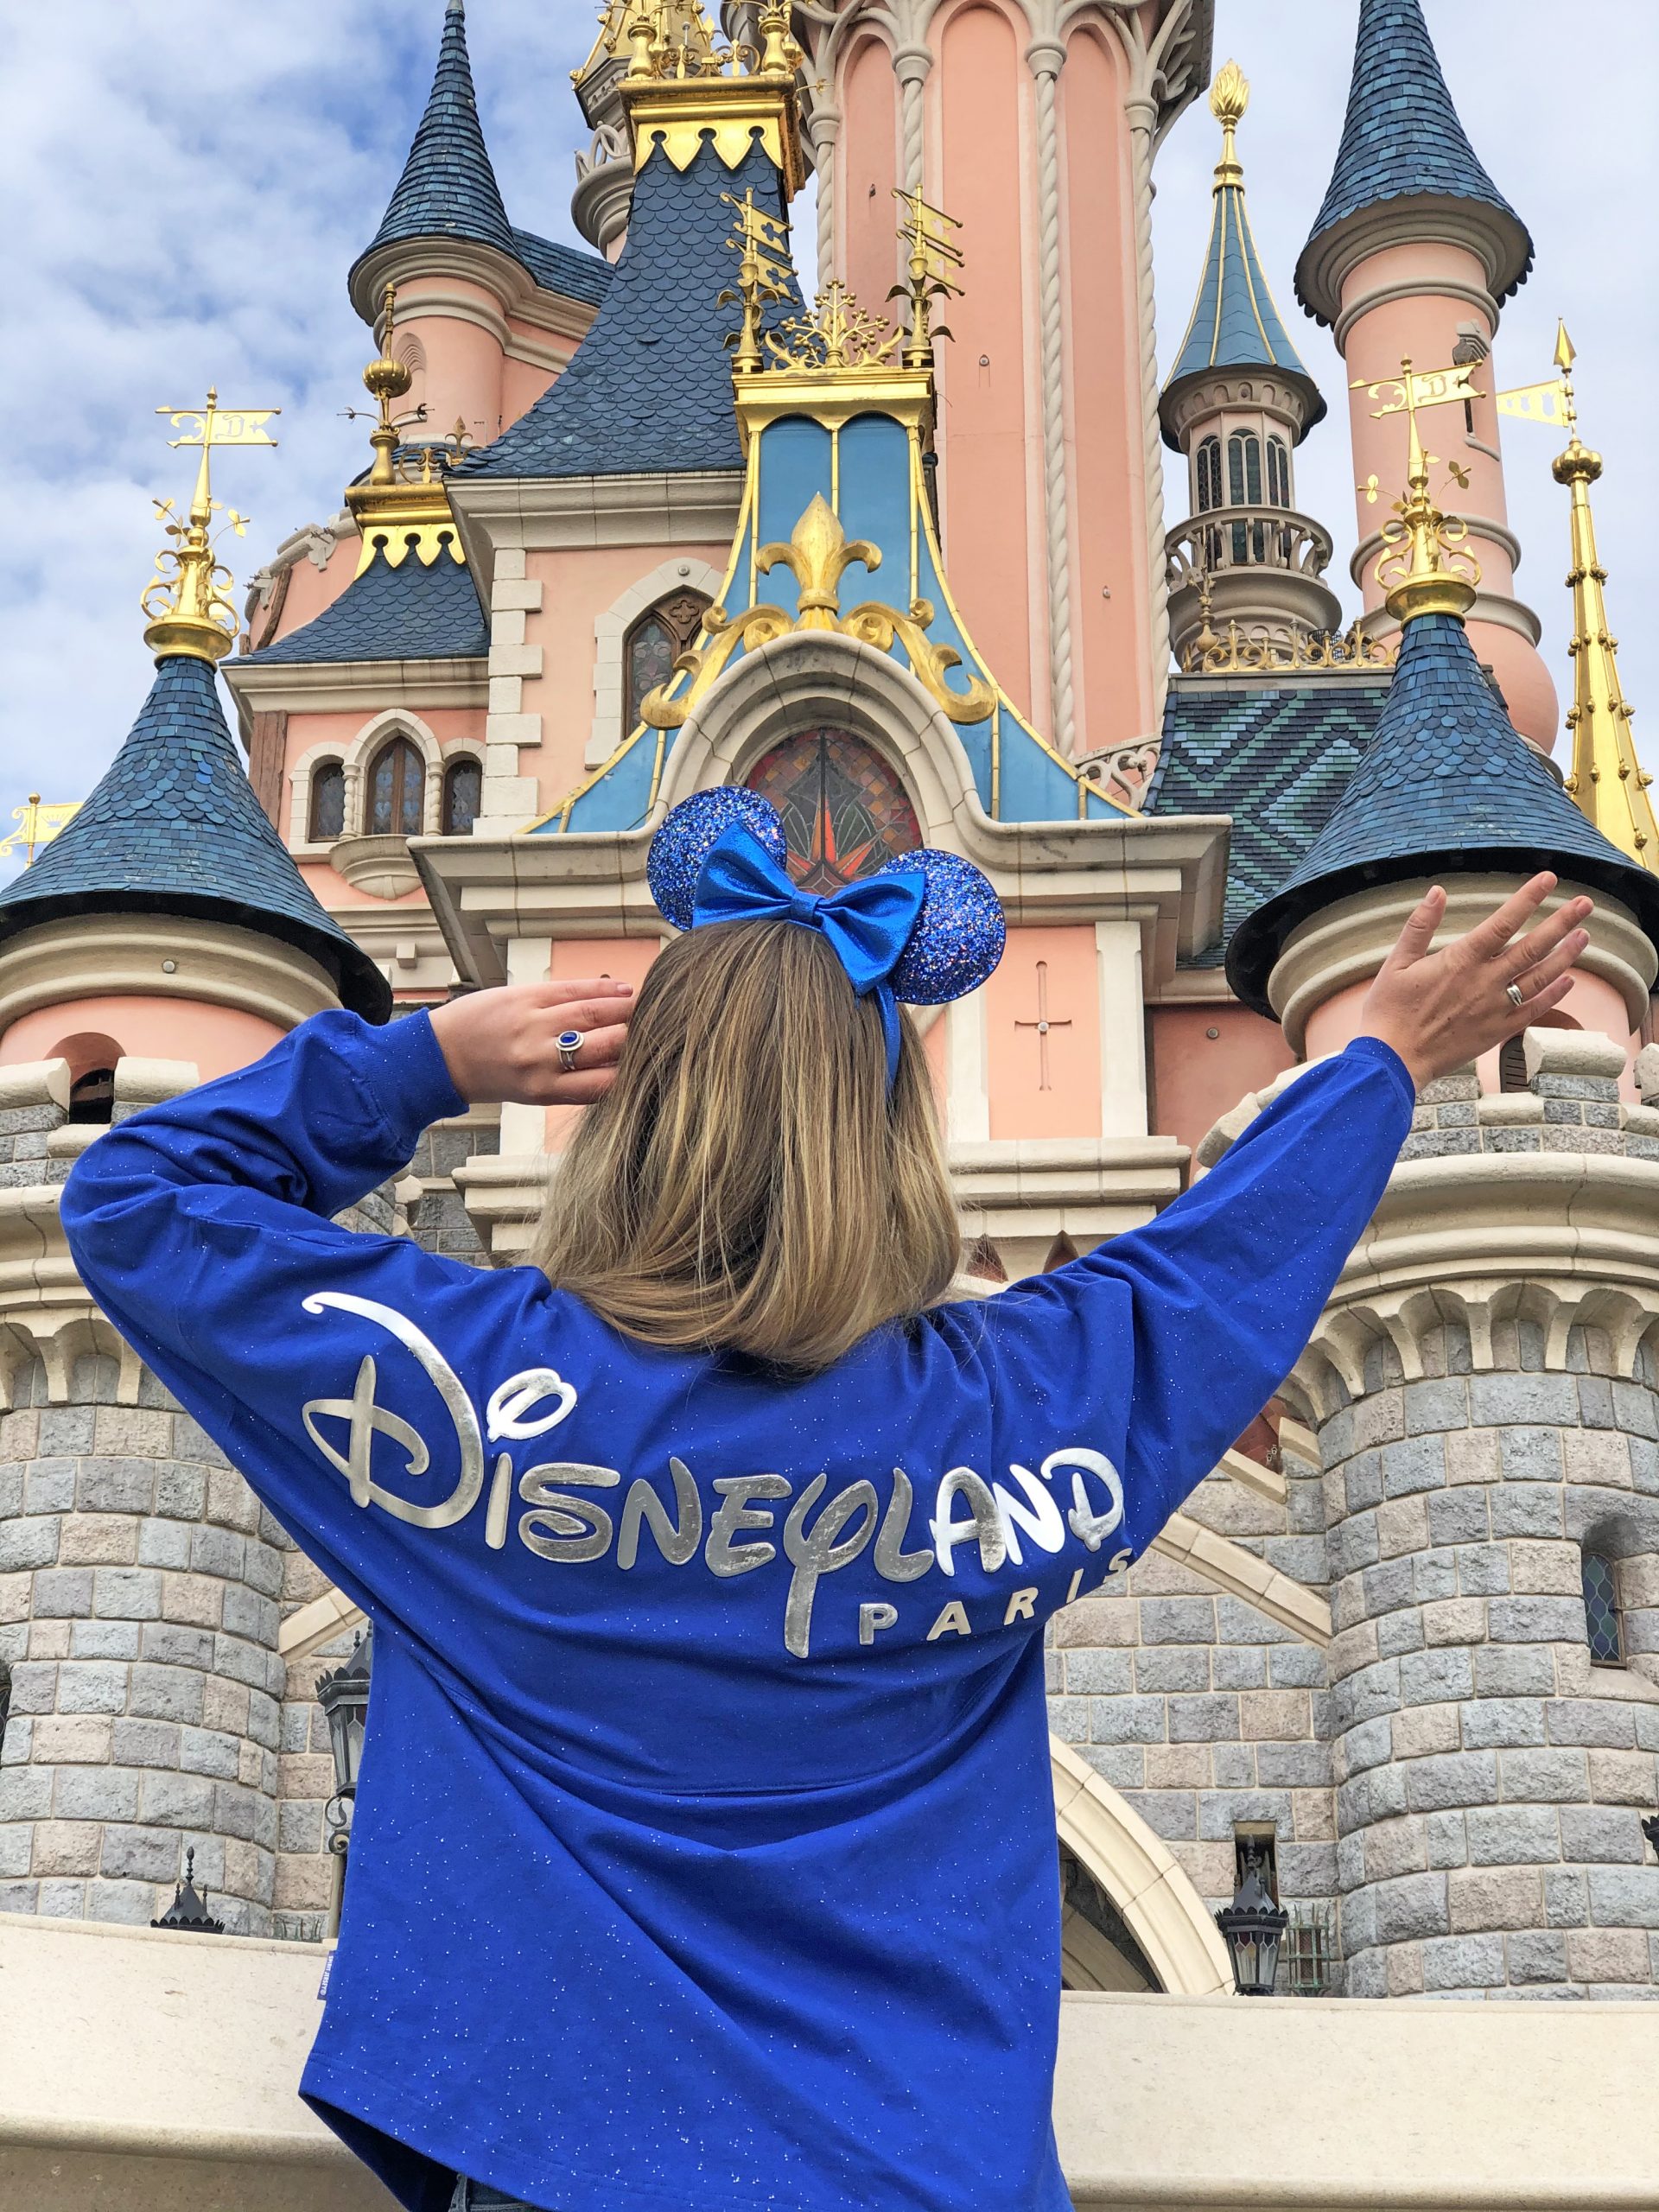 Disneyland Paris lance les ventes de la collection de couleurs Wishes Come True Blue jusqu’au 29 avril en soutien à Make-A-Wish®